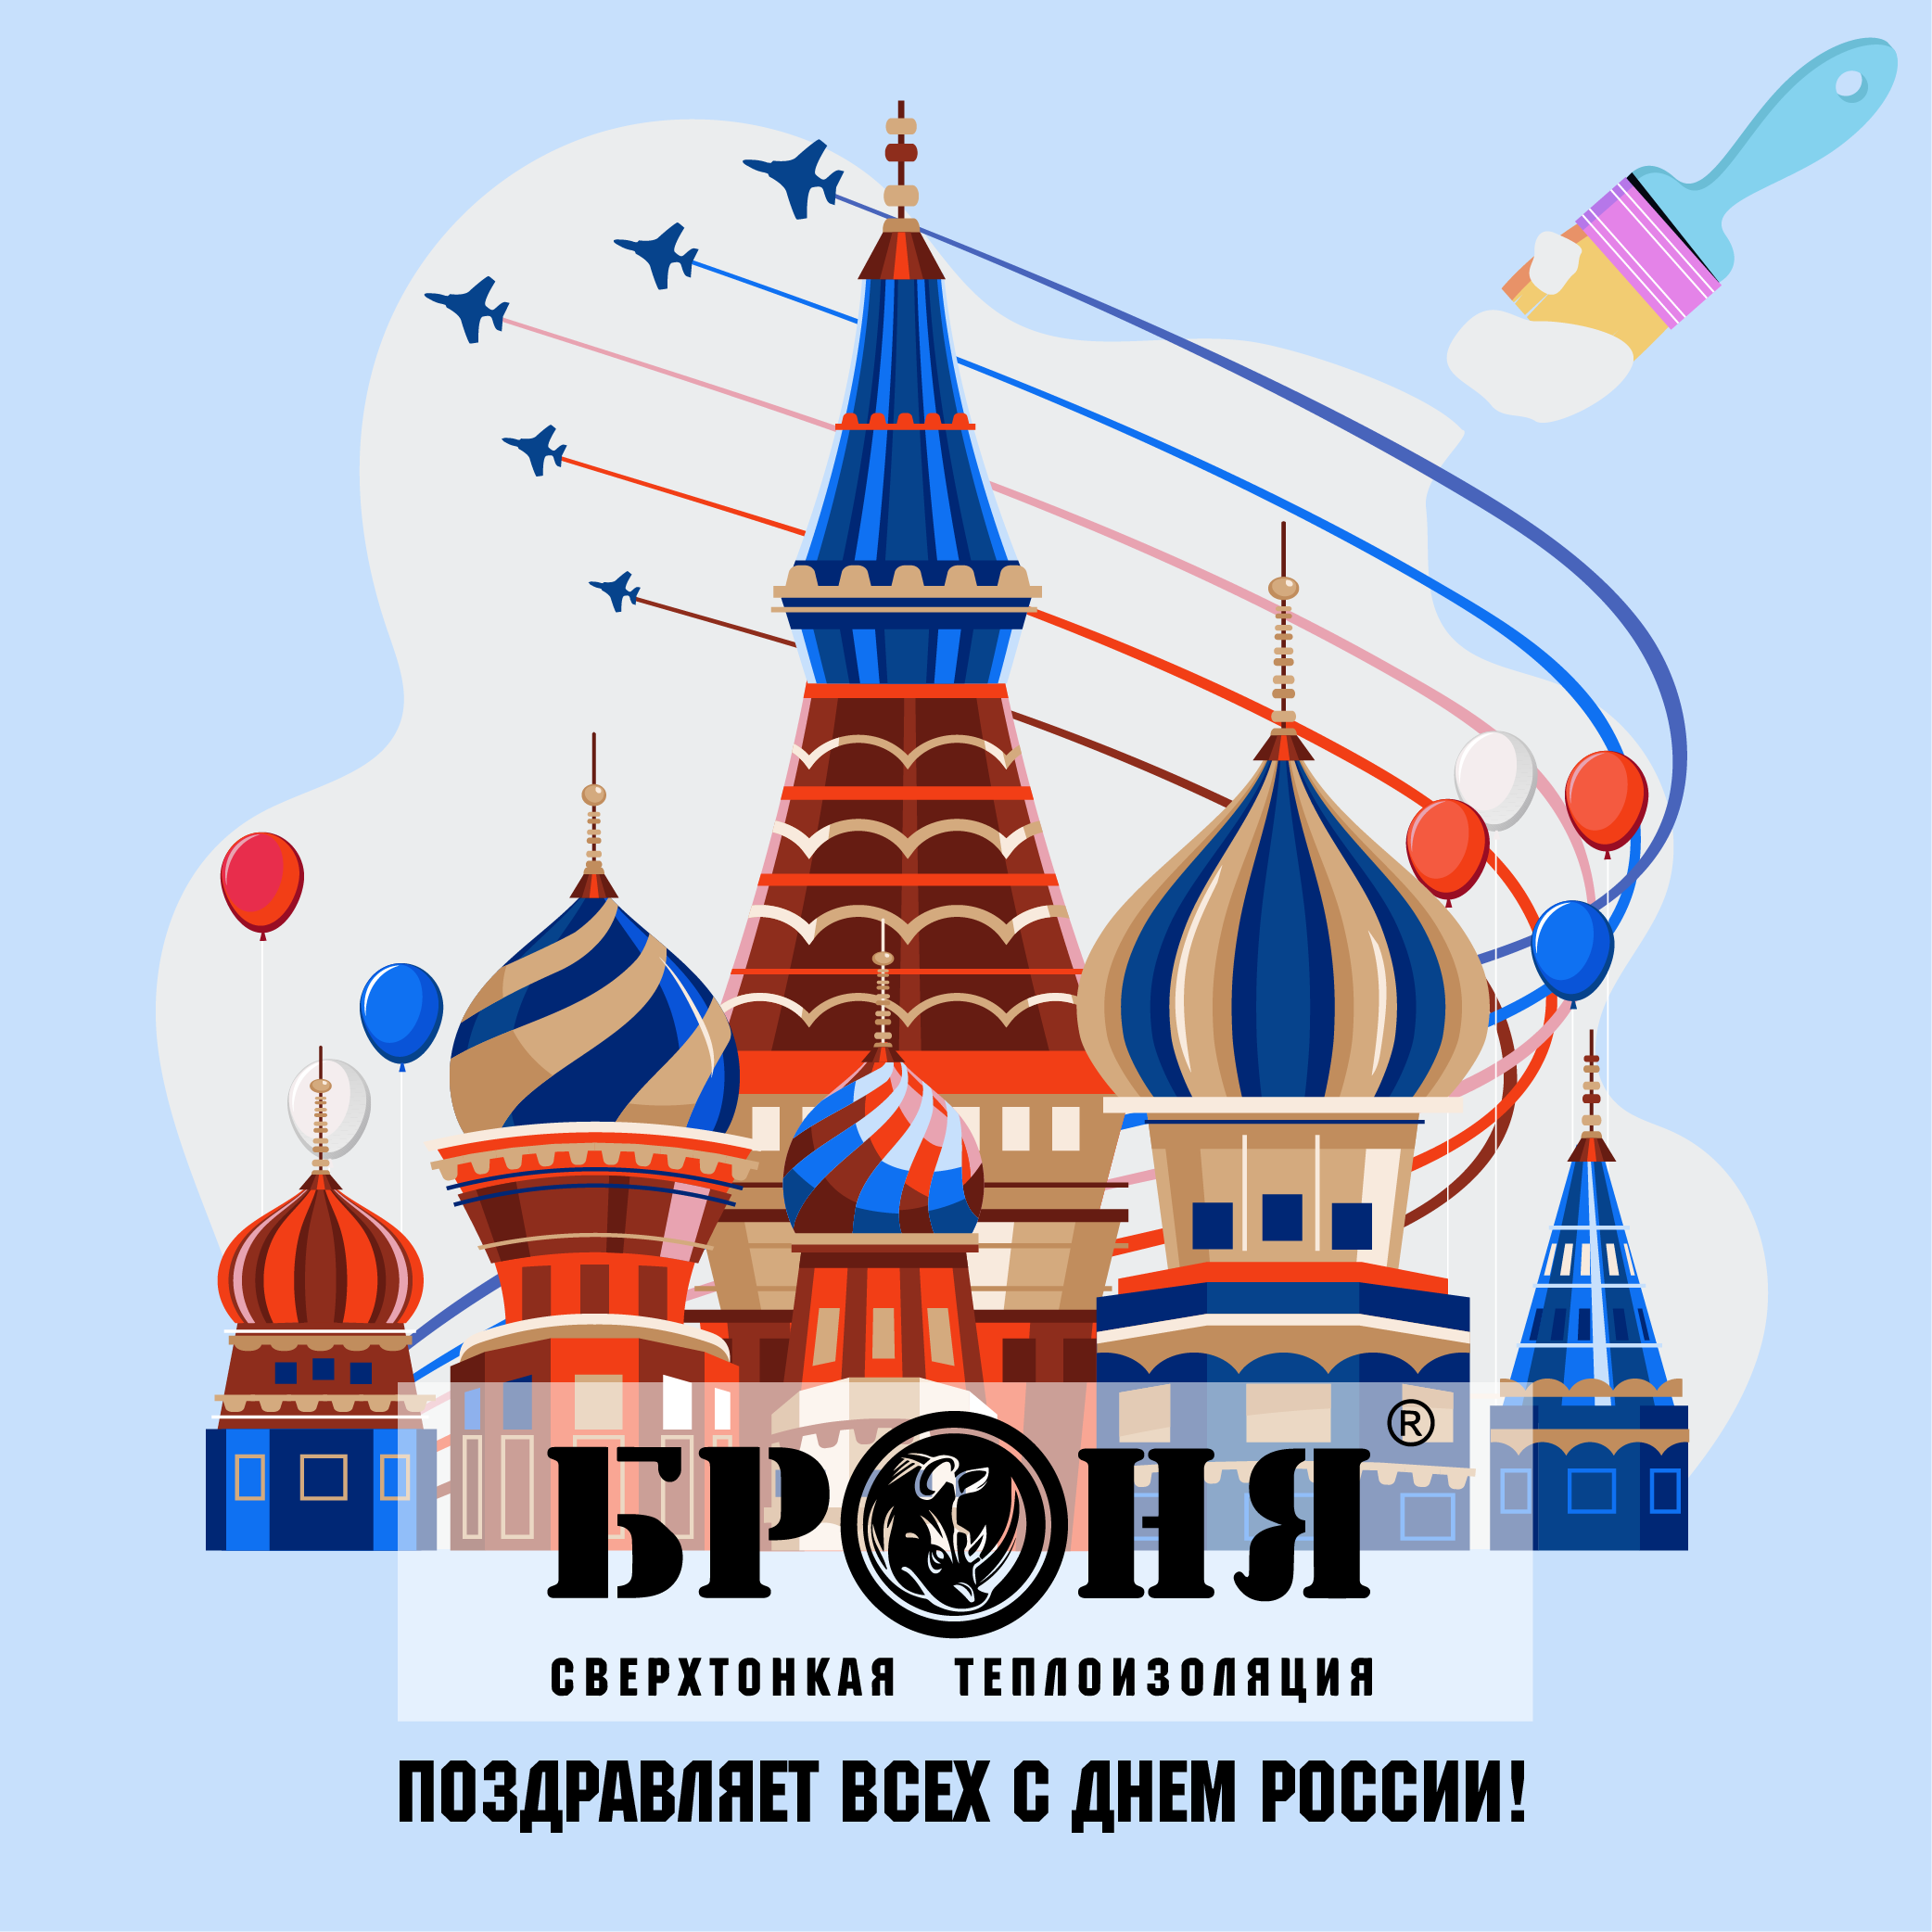 Броня поздравляет всех с Днем России!